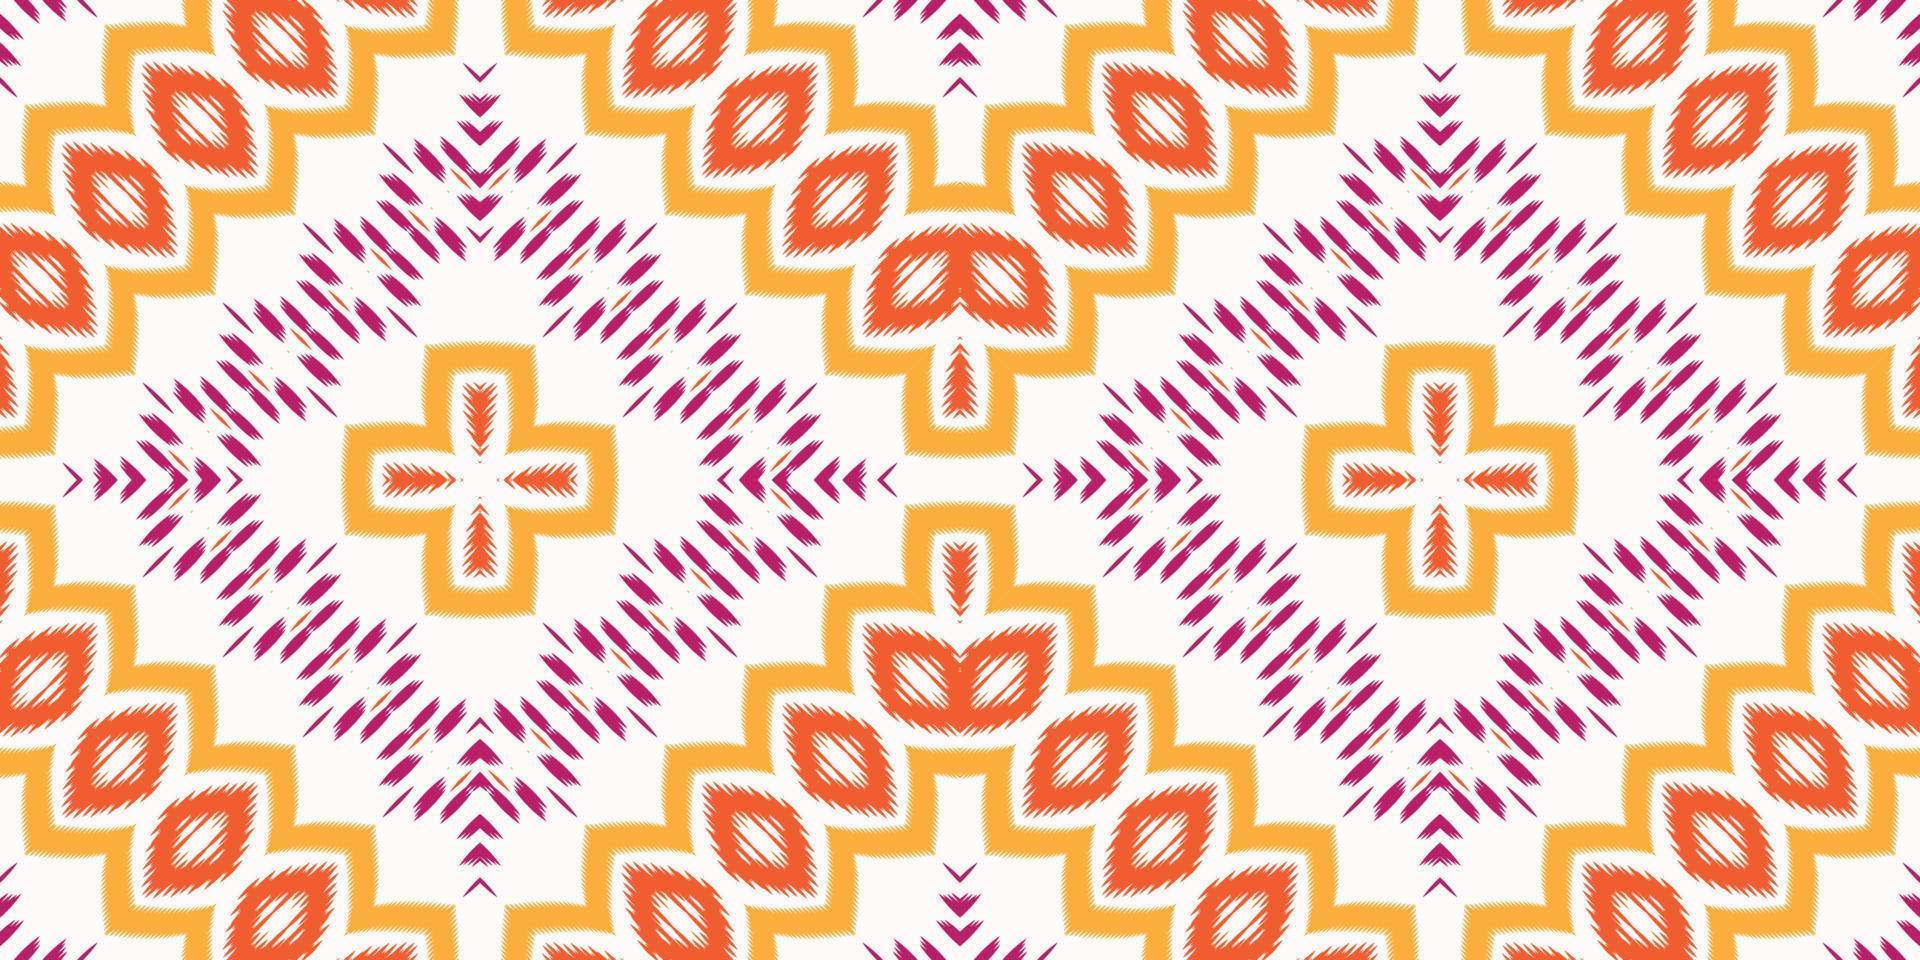 batik textil ikat impresión de patrones sin fisuras diseño vectorial digital para impresión saree kurti borneo borde de tela símbolos de pincel muestras elegantes vector